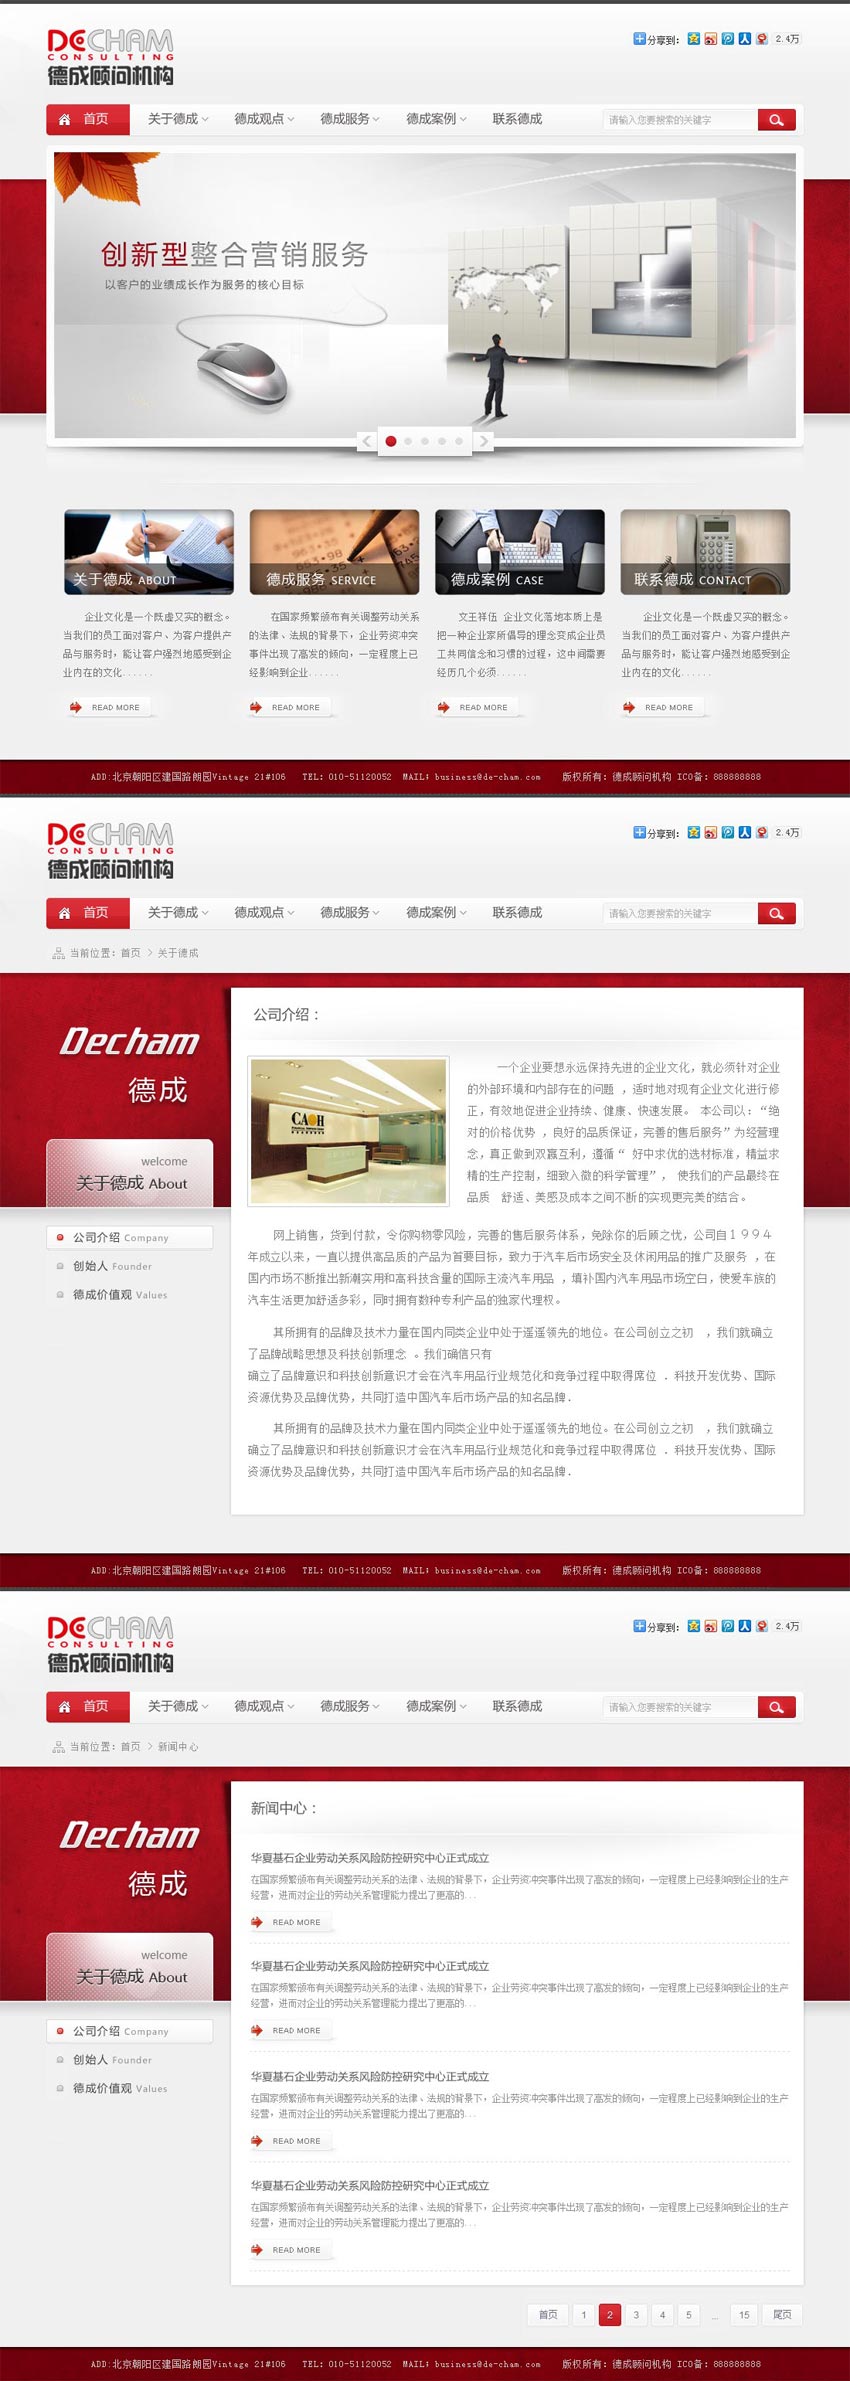 红色酷炫精致的咨询商务企业网站模板全套PSD素材下载